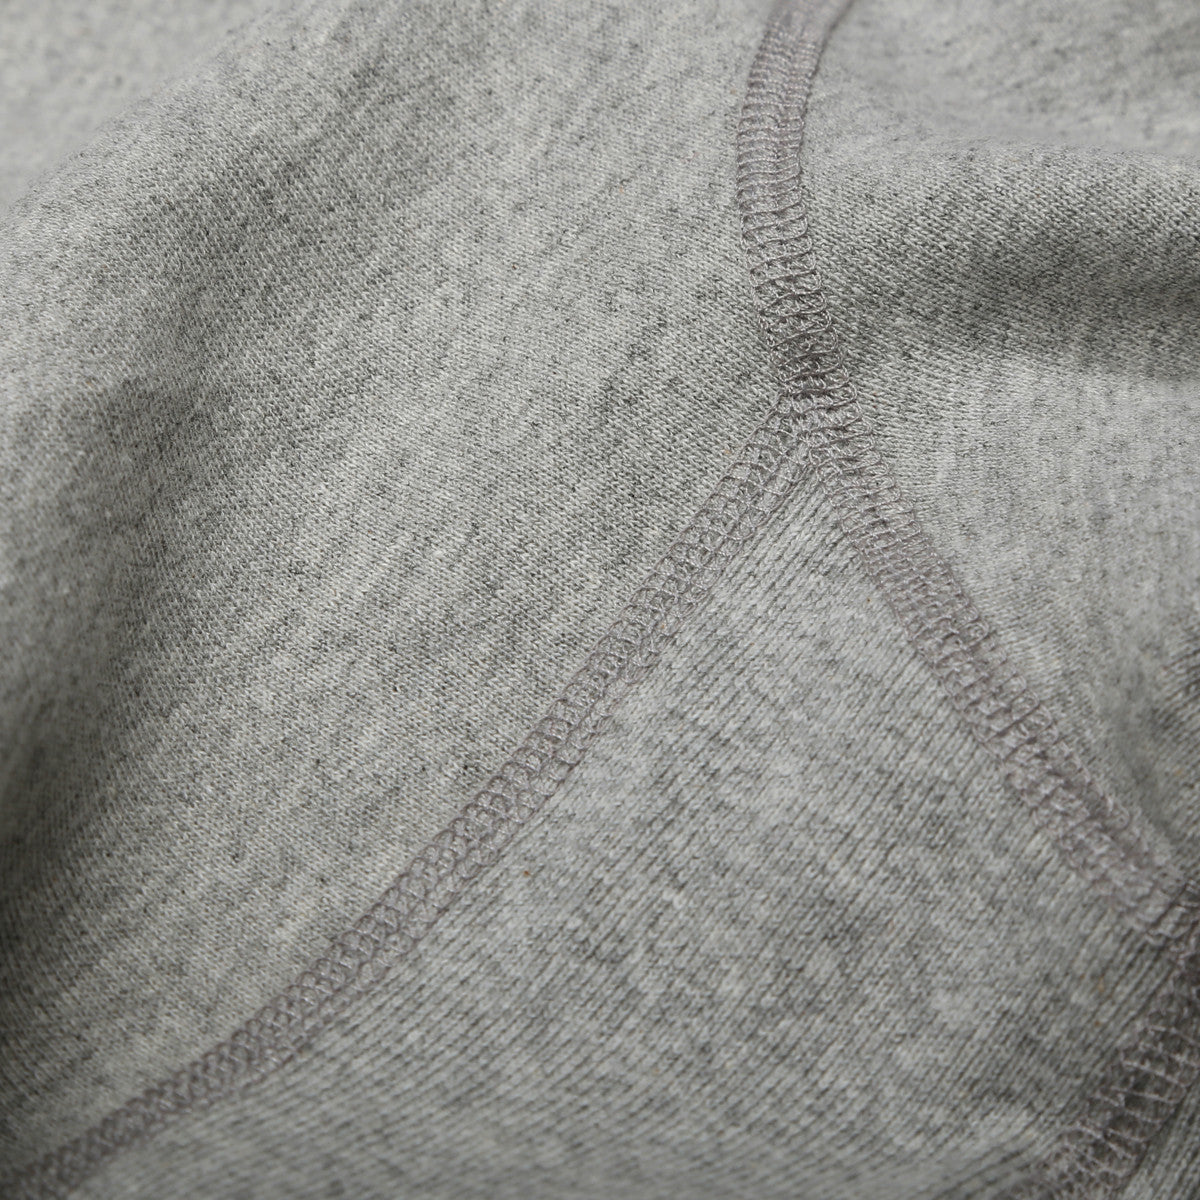 Crewneck Sweatshirt Heather Grey 400 GSM Fleece – House Of Blanks